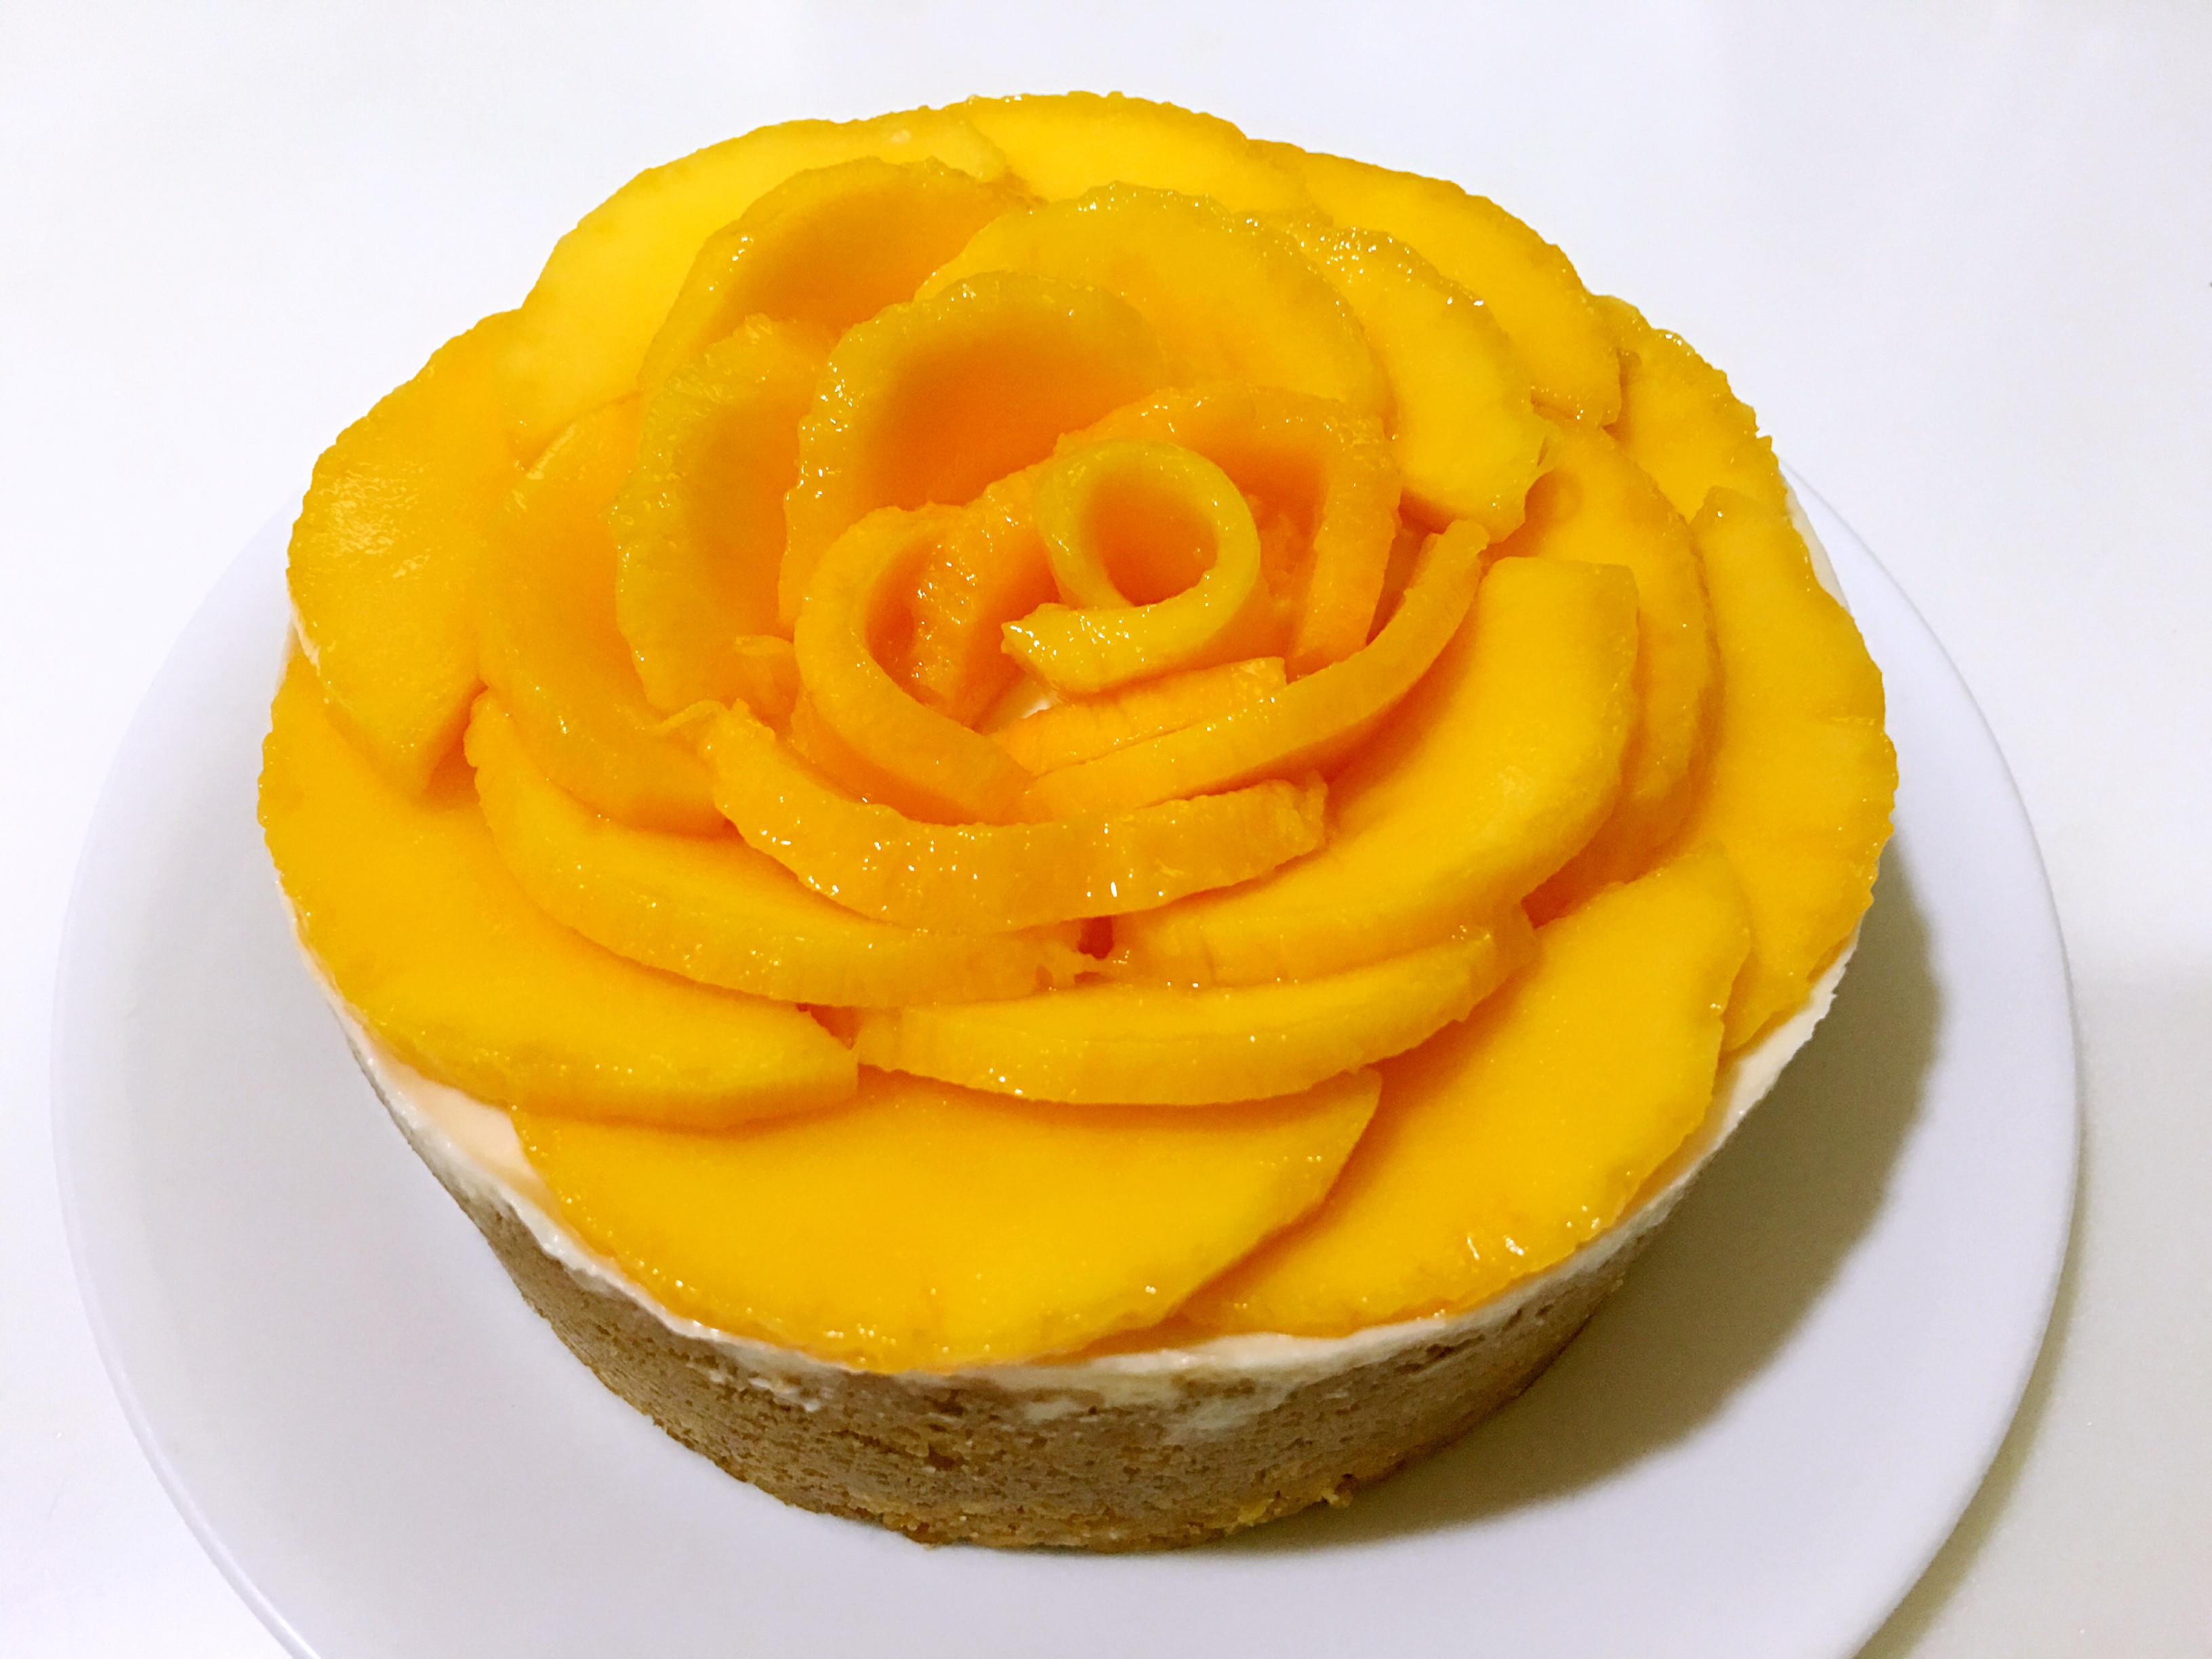 爱厨房的幸福之味: 芒果蛋糕 Mango Cake